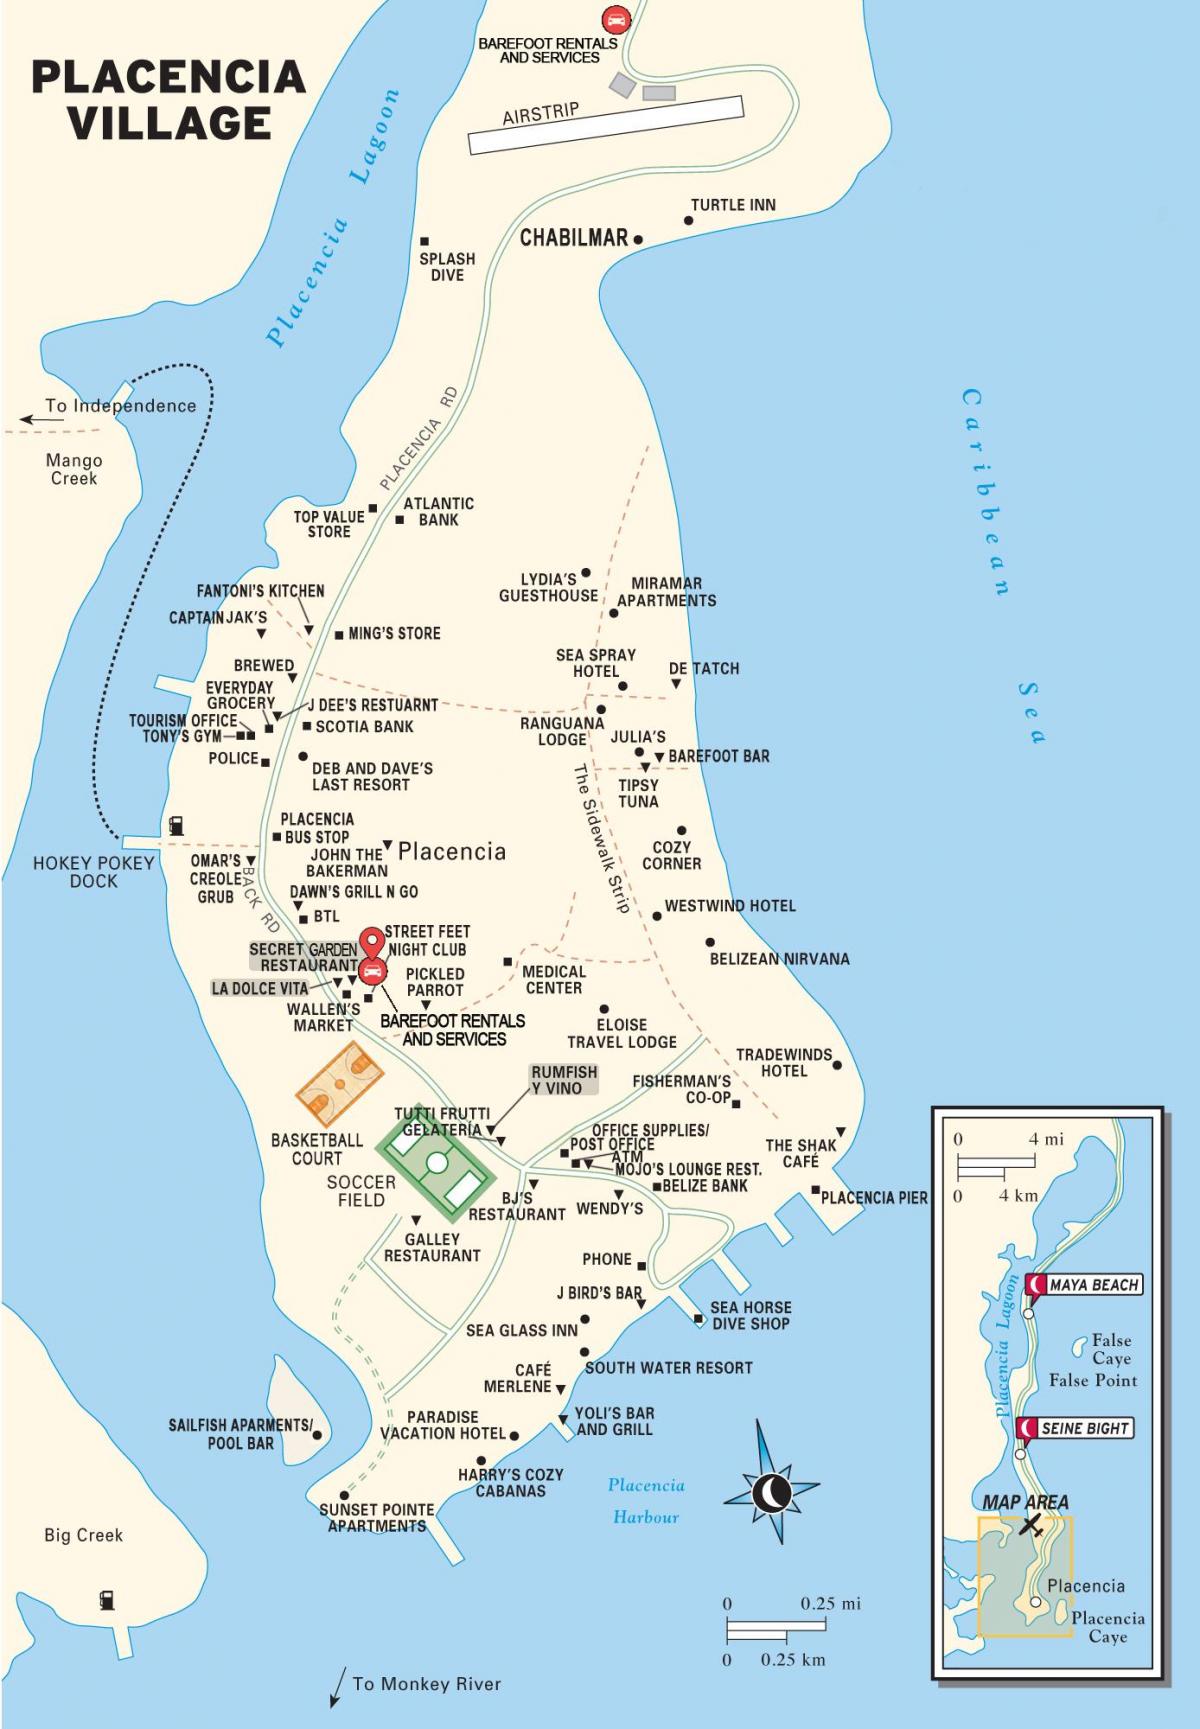 zemljevid placencia vasi Belize